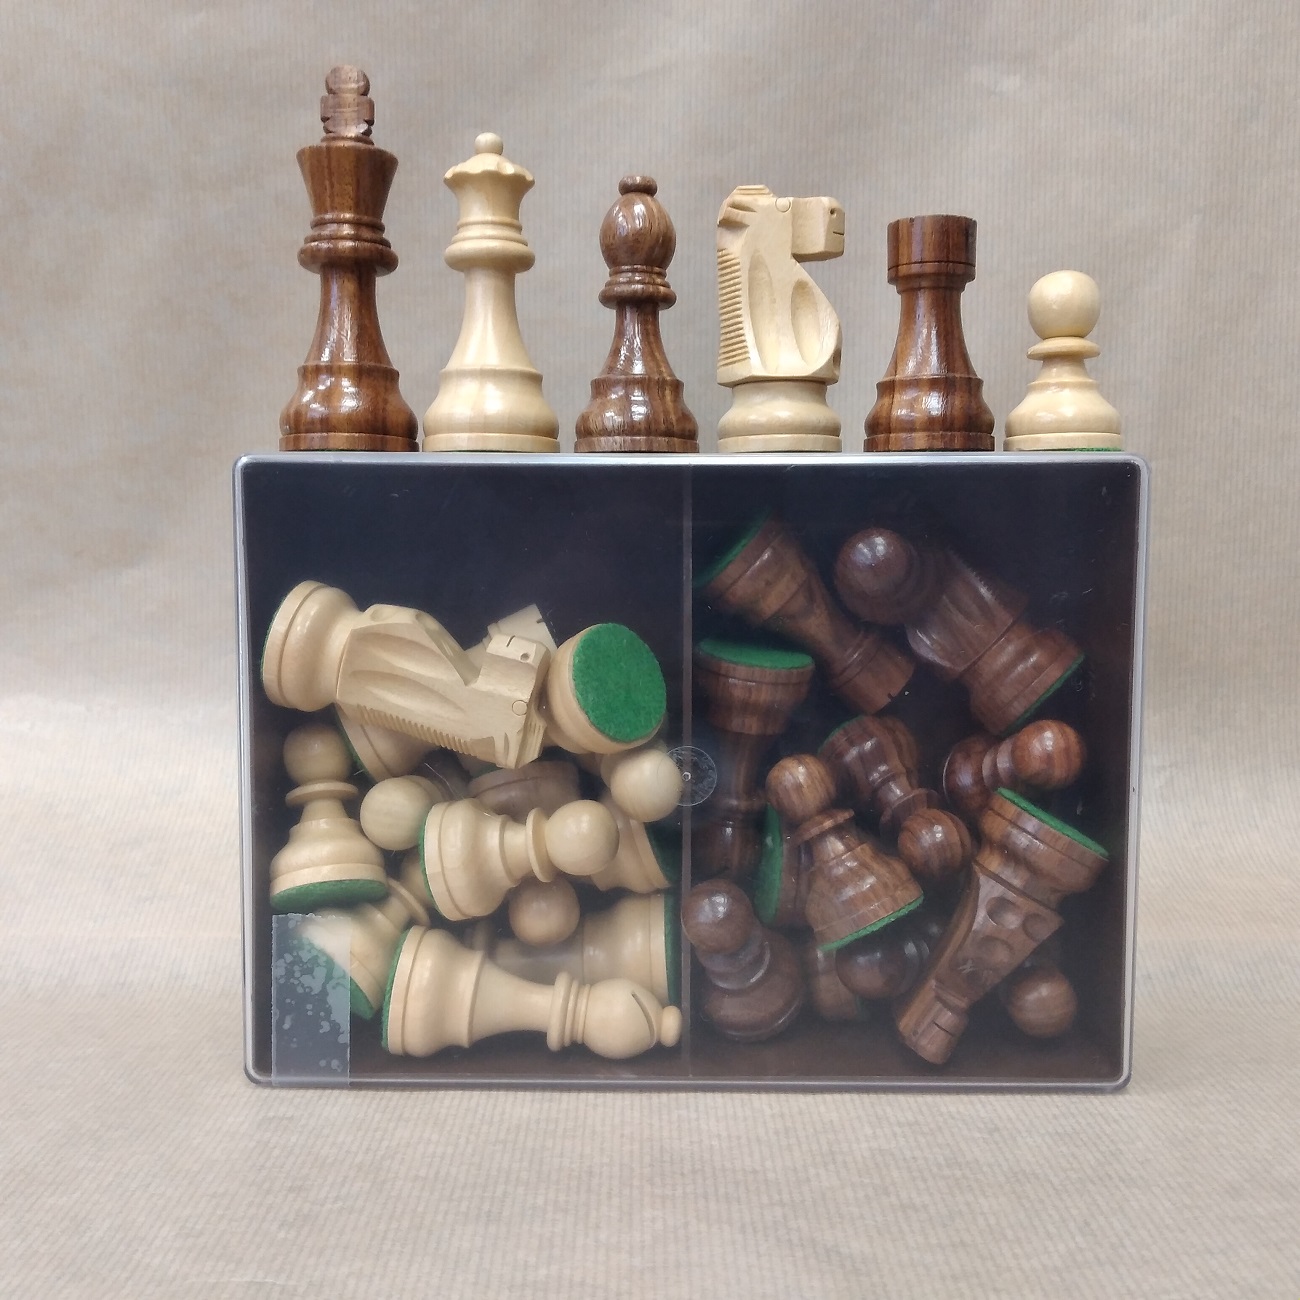 סט כלי שחמט מעץ Boxwood&Sheesham, דגם סטאונטון צרפתי 95  בקופסת פלסטיק. מק''ט 4044